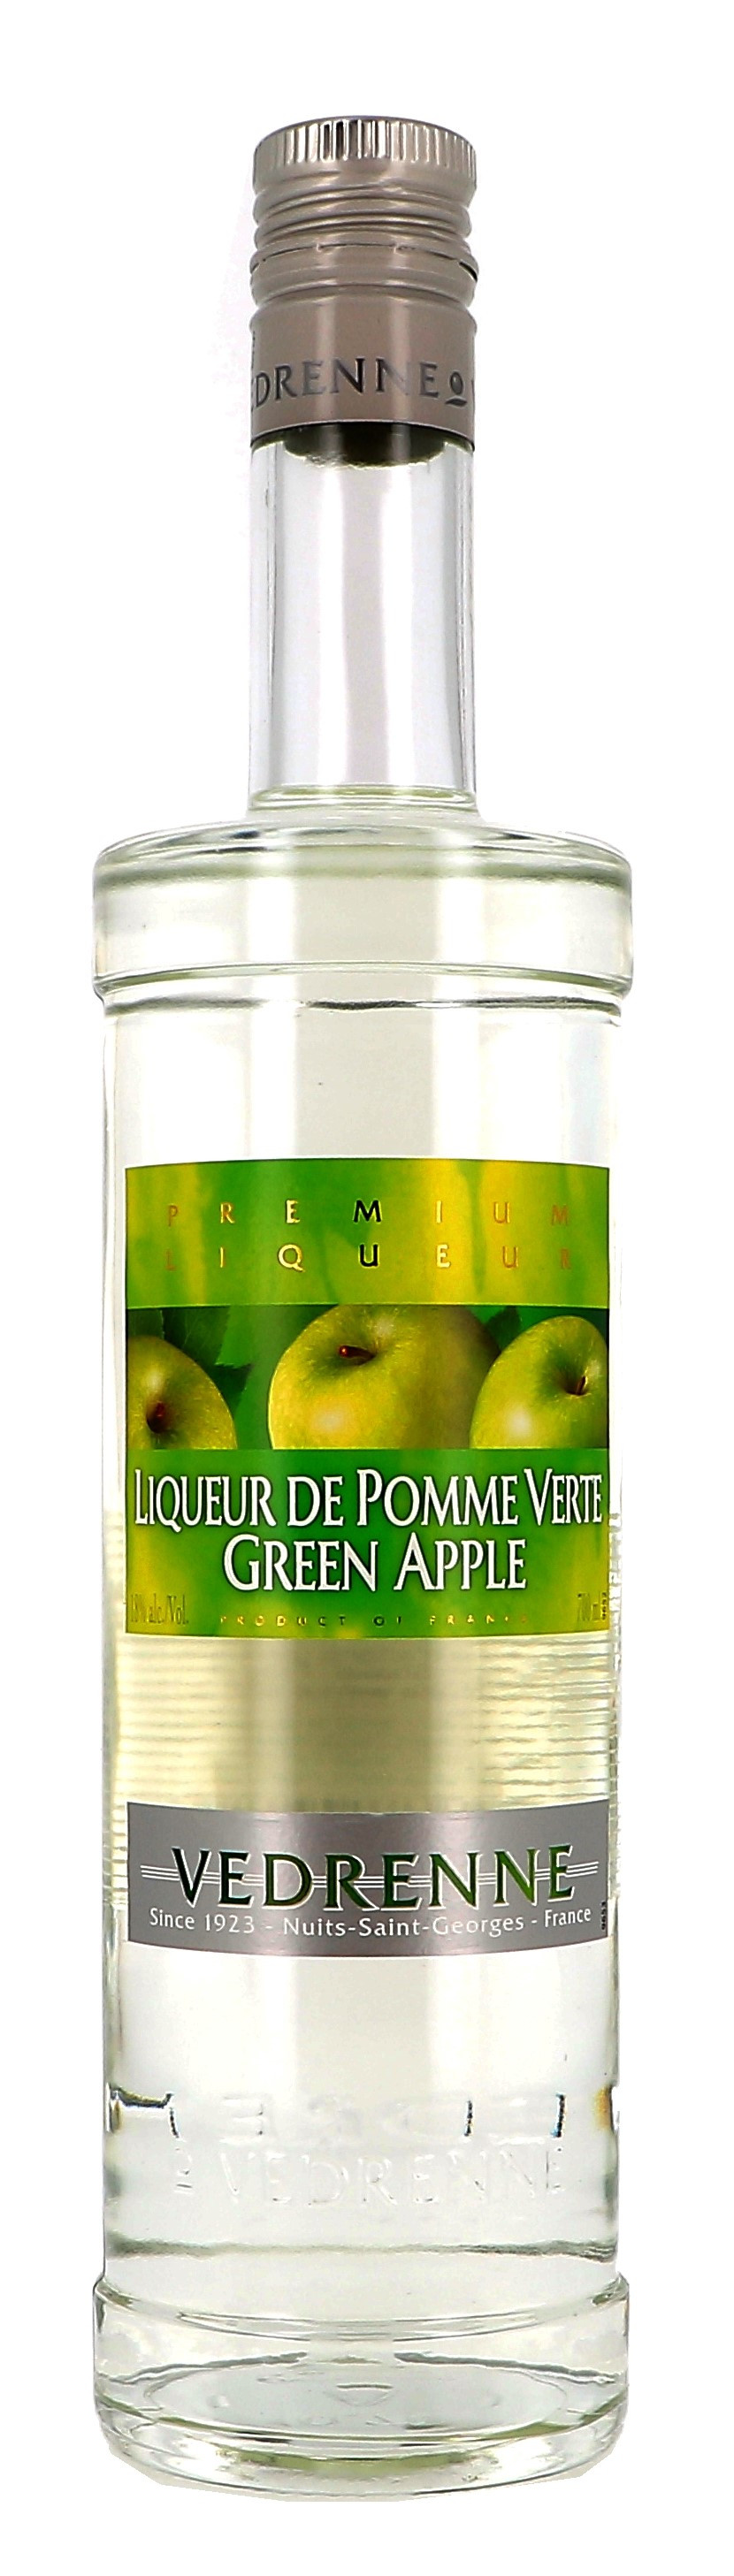 Vedrenne Creme de Pomme Verte 70cl 18% Liqueur (Likeuren)